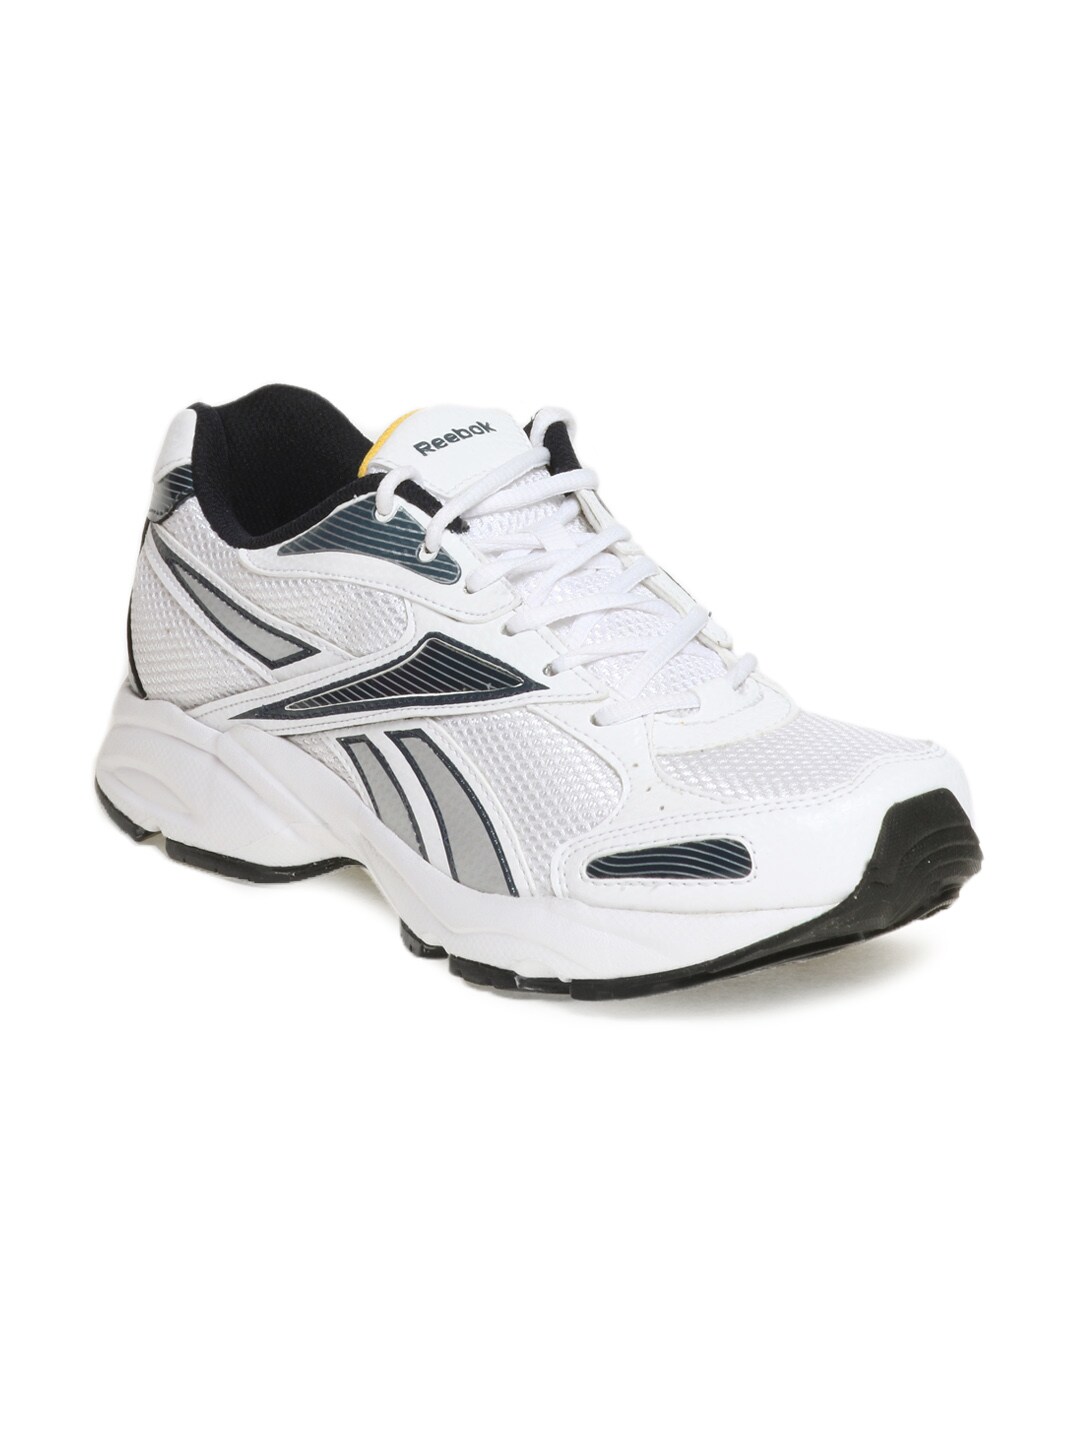 Reebok Men White United Runner Sports Shoes